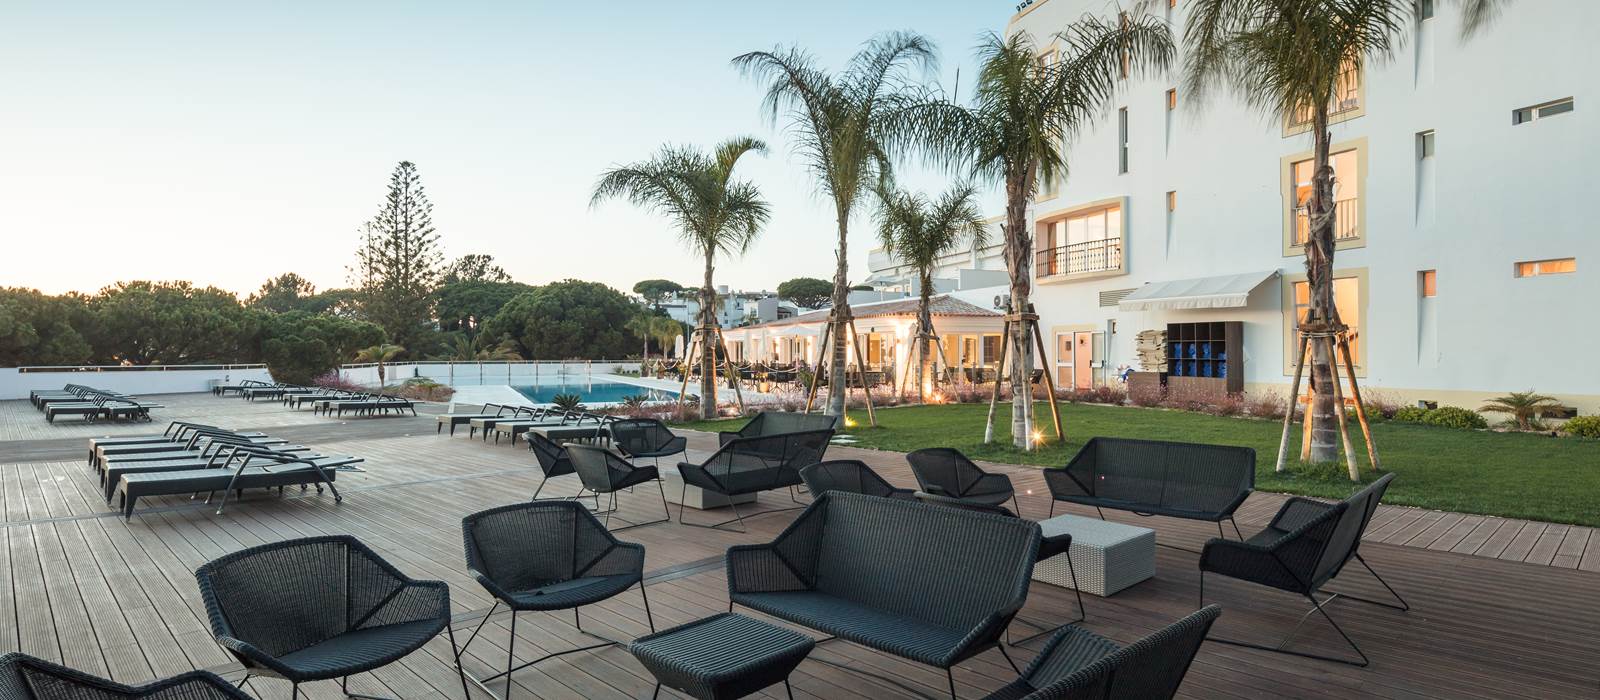 Poolside at Dona Filipa Hotel, Algarve